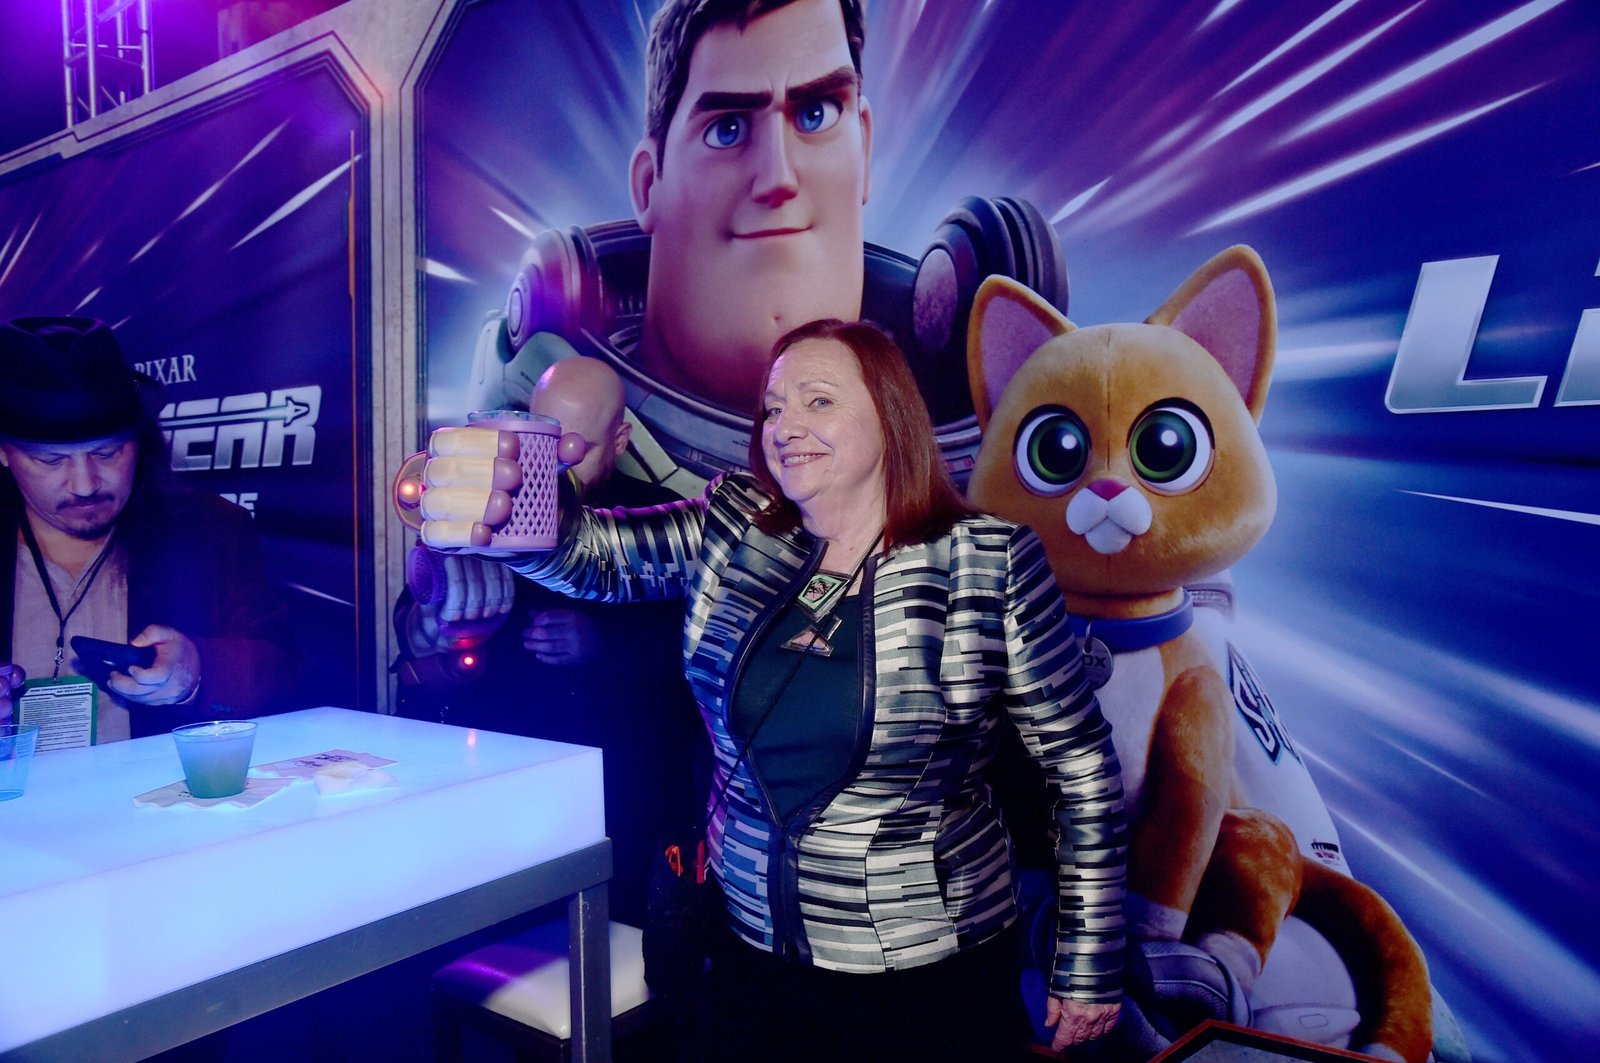 'Lightyear': Fotos de la premiere mundial en Los Ángeles de la nueva película de Pixar • En tu pantalla